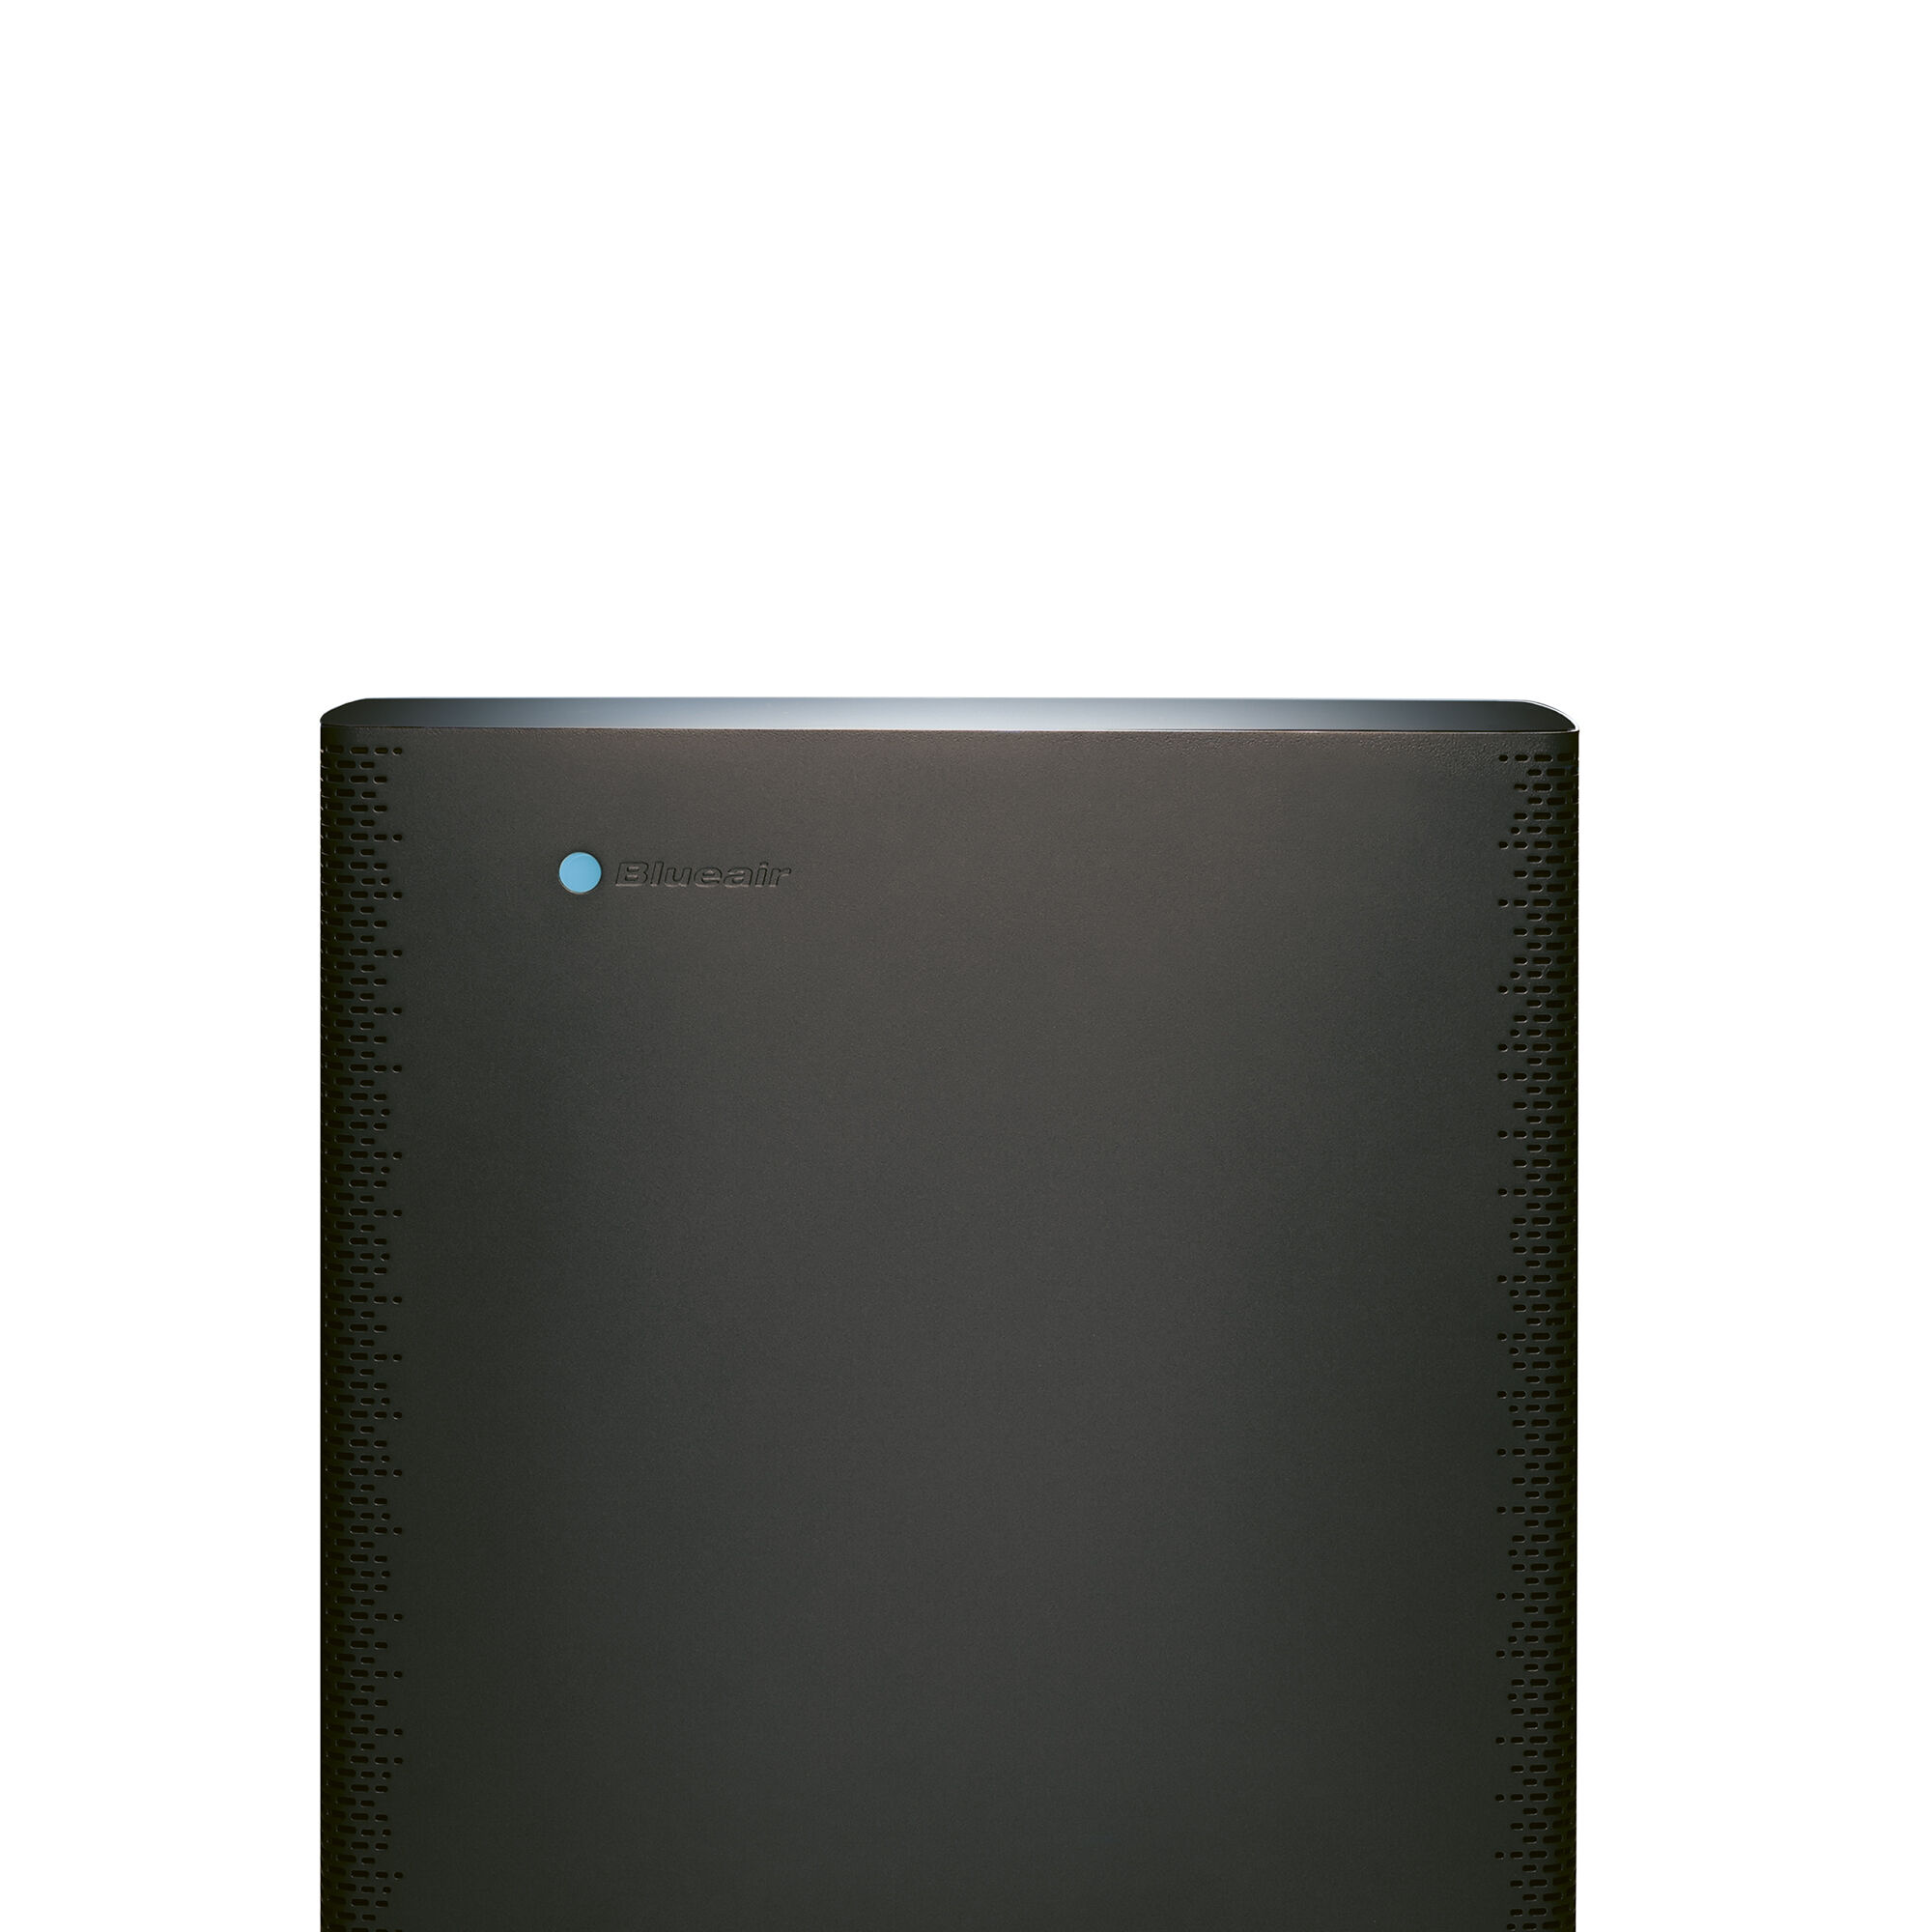 Sense+ | Air purifier up to 43m² | Blueair